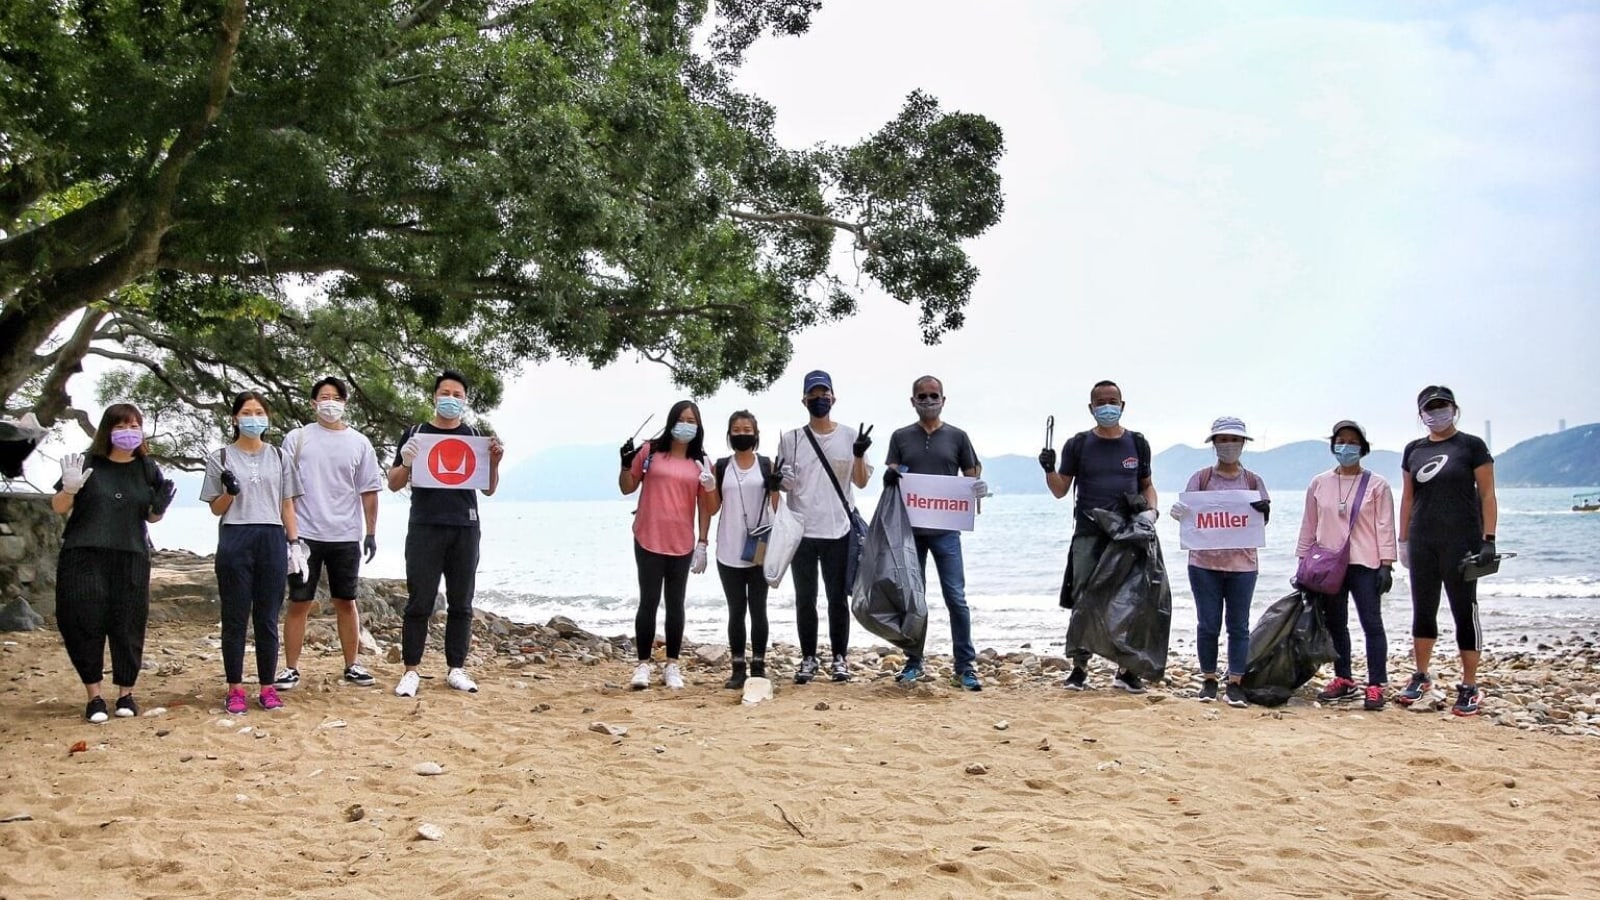 Doze pessoas estão juntas em uma praia segurando sacos de lixo que parecem cheios de lixo coletado da área adjacente da praia.